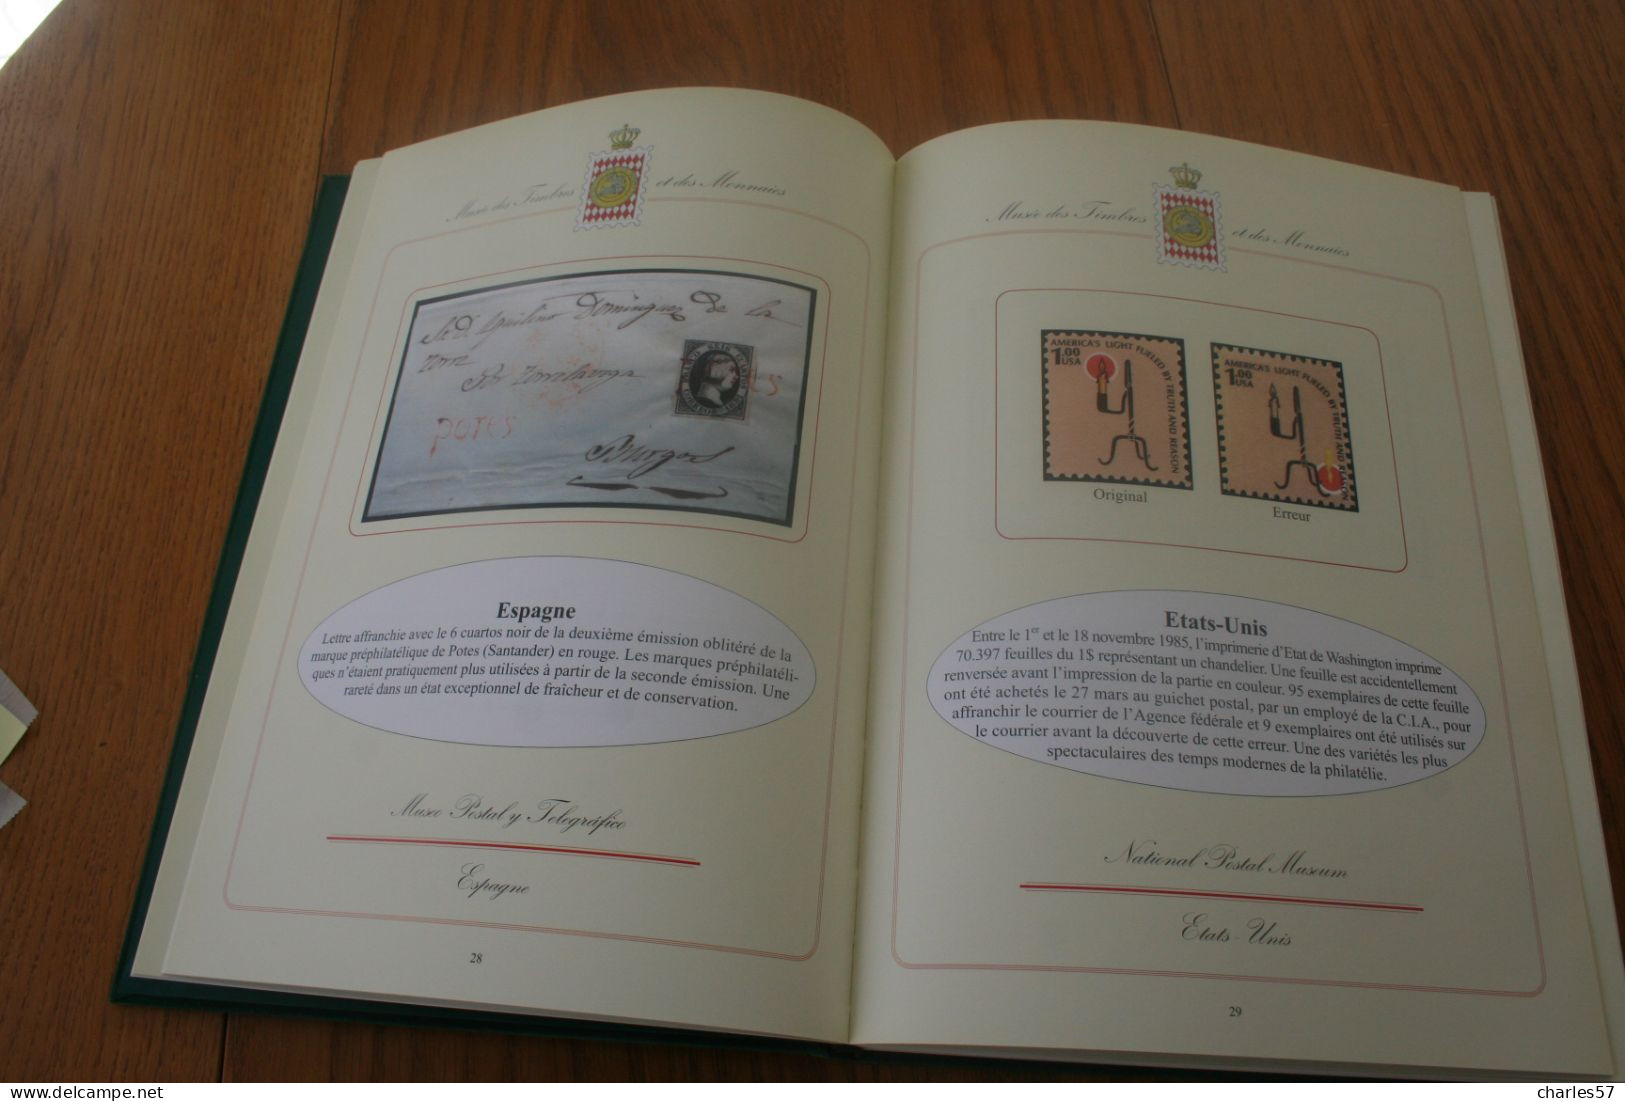 Catalogue :de l'exposition des 100 timbres et documents philatéliques parmi les plus rares du monde, 160 pages